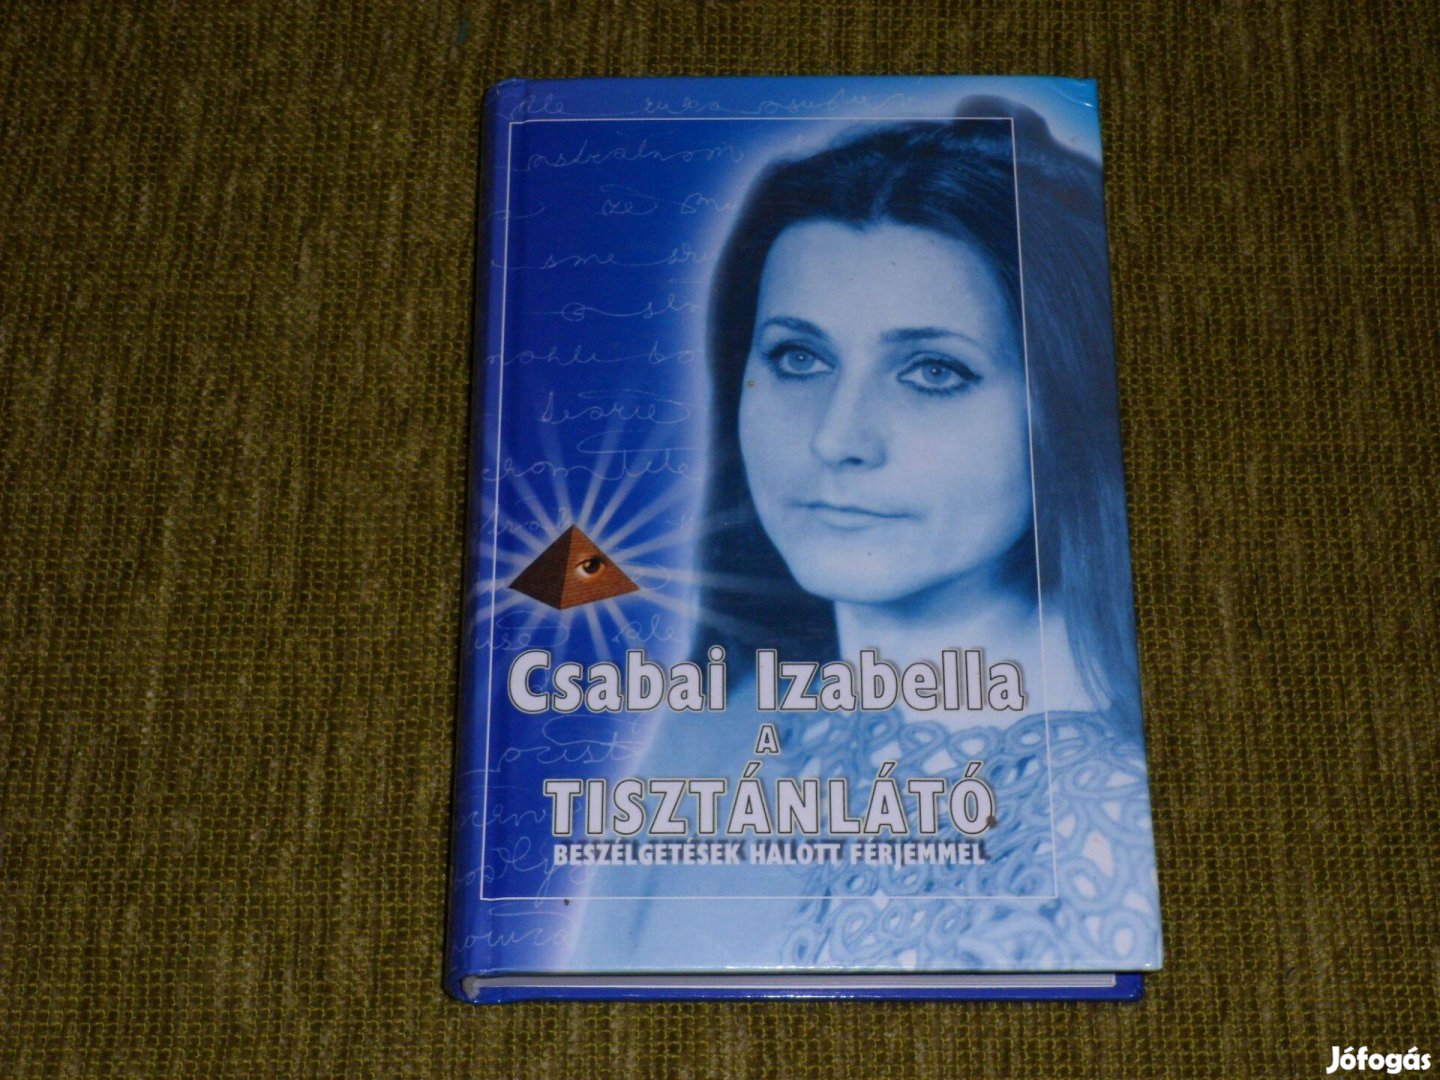 Csabai Izabella, a tisztánlátó (Beszélgetések halott férjemmel)